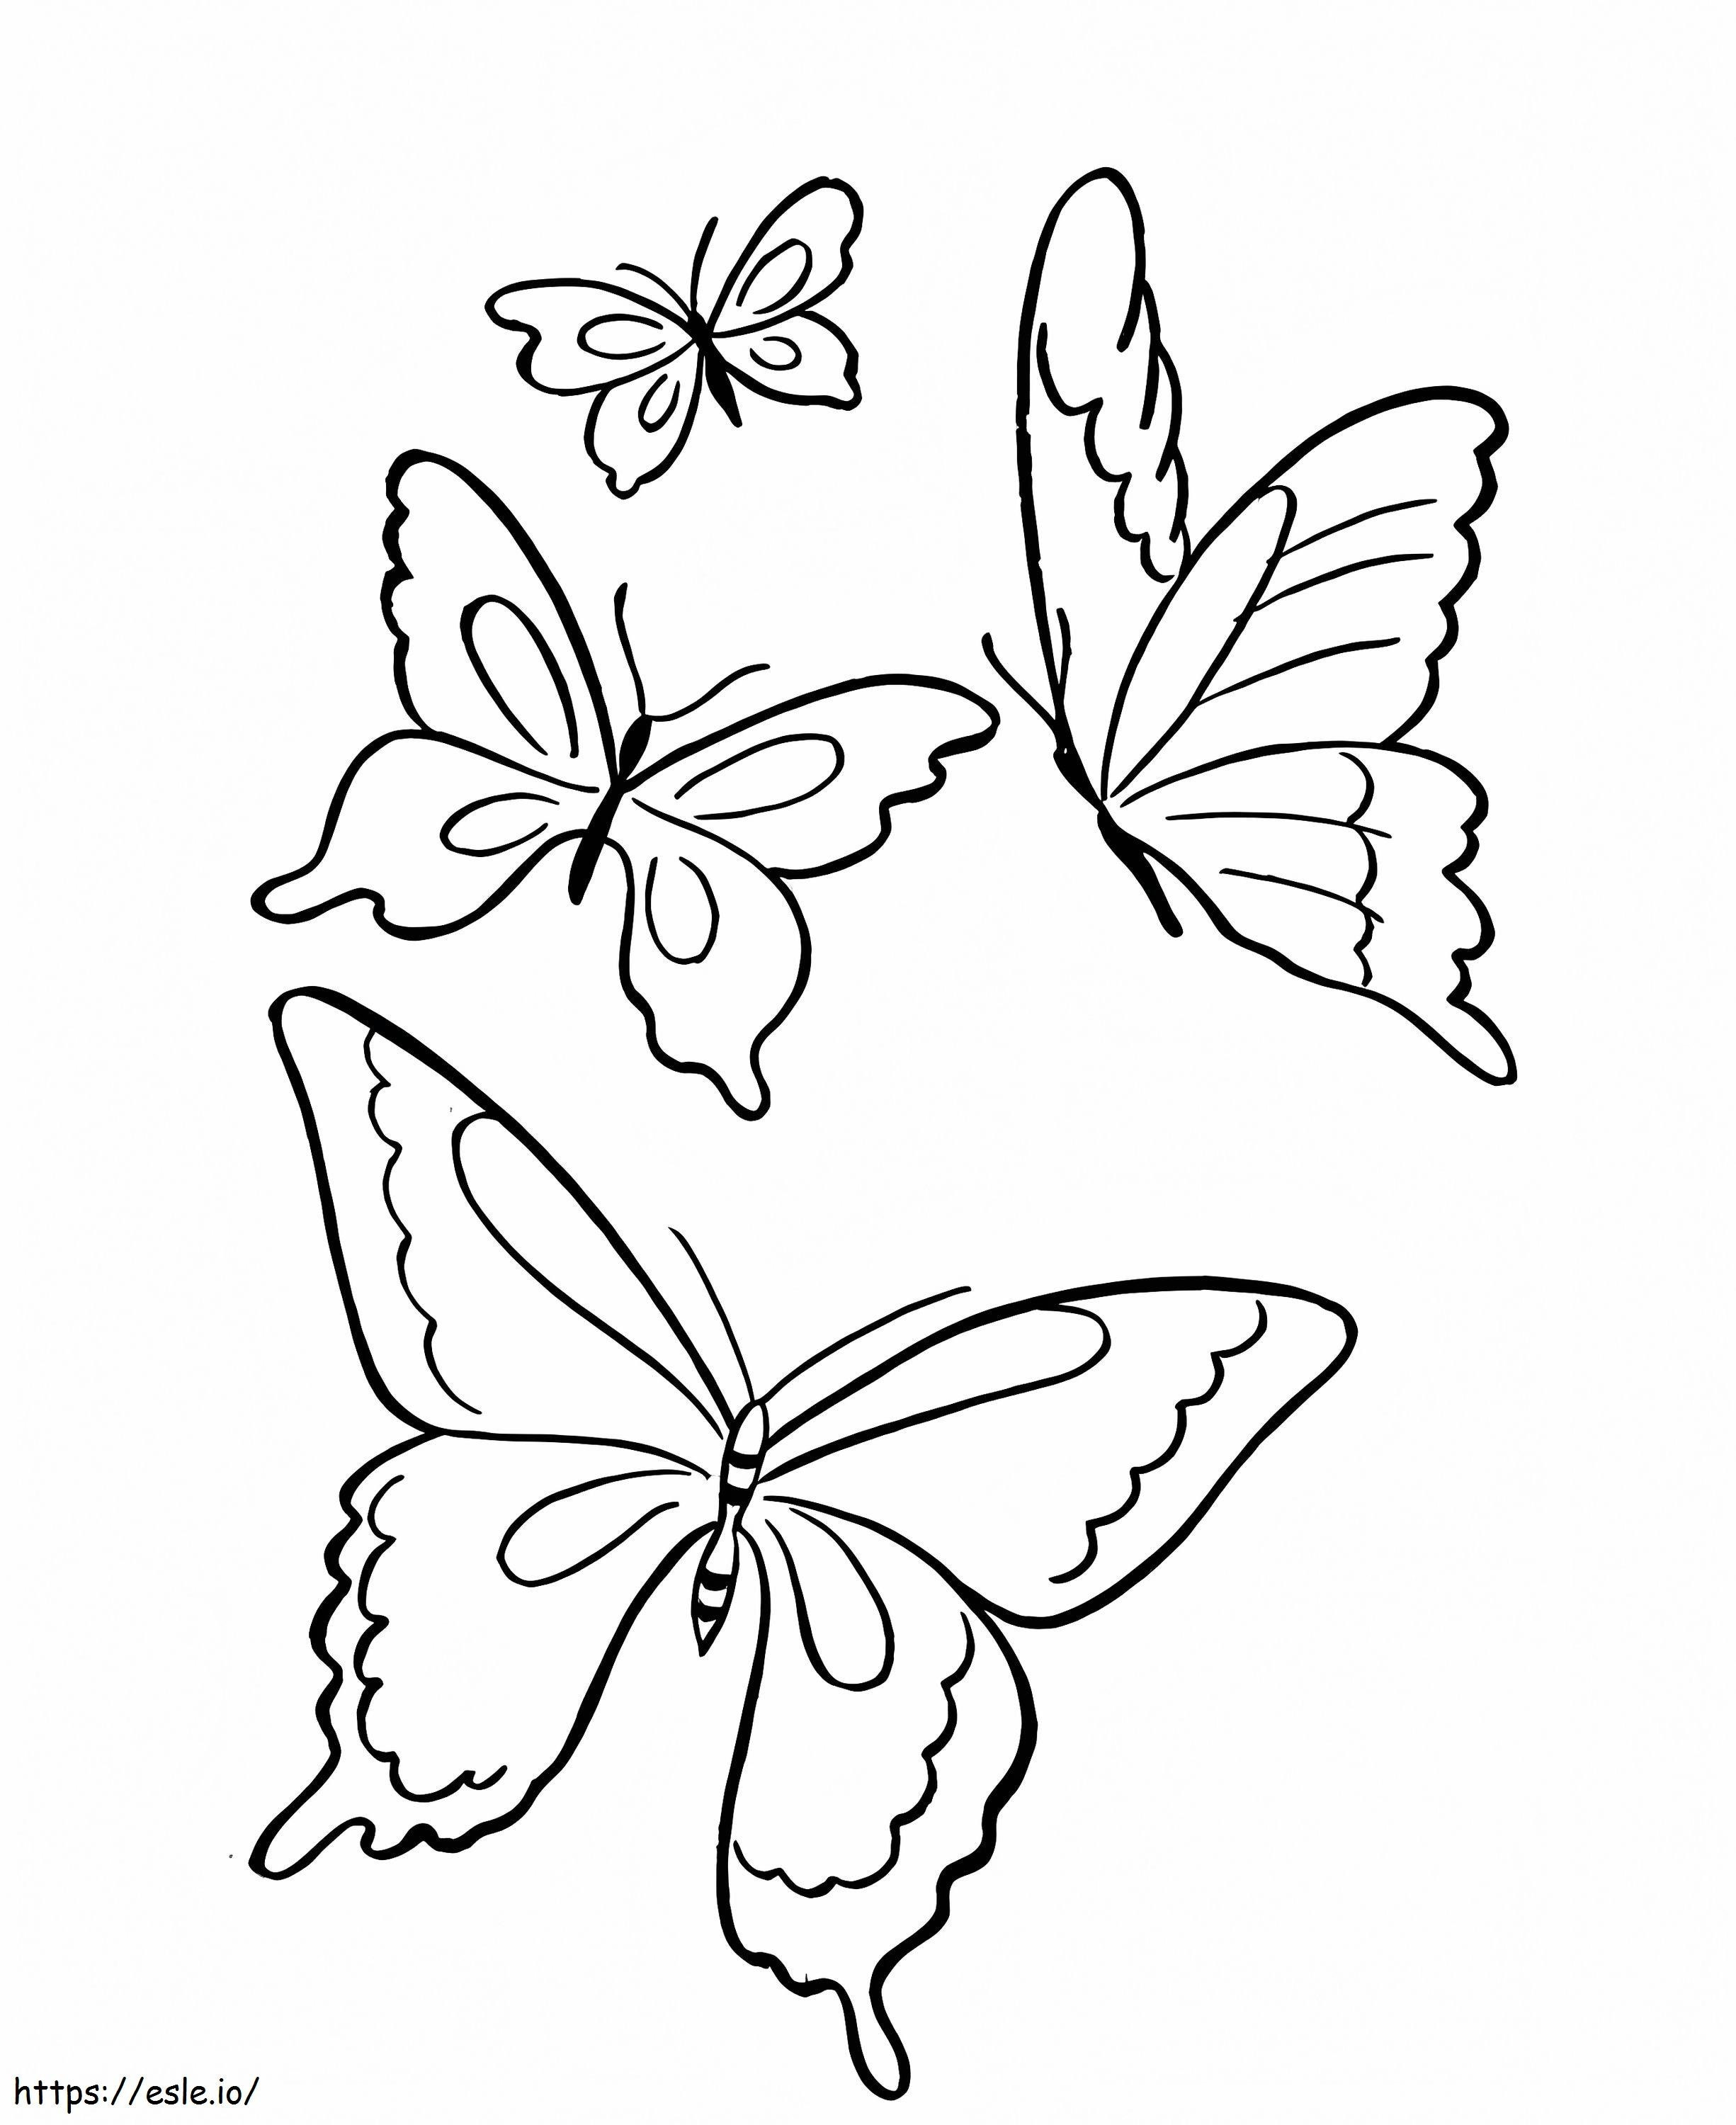 Vier vlinders kleurplaat kleurplaat